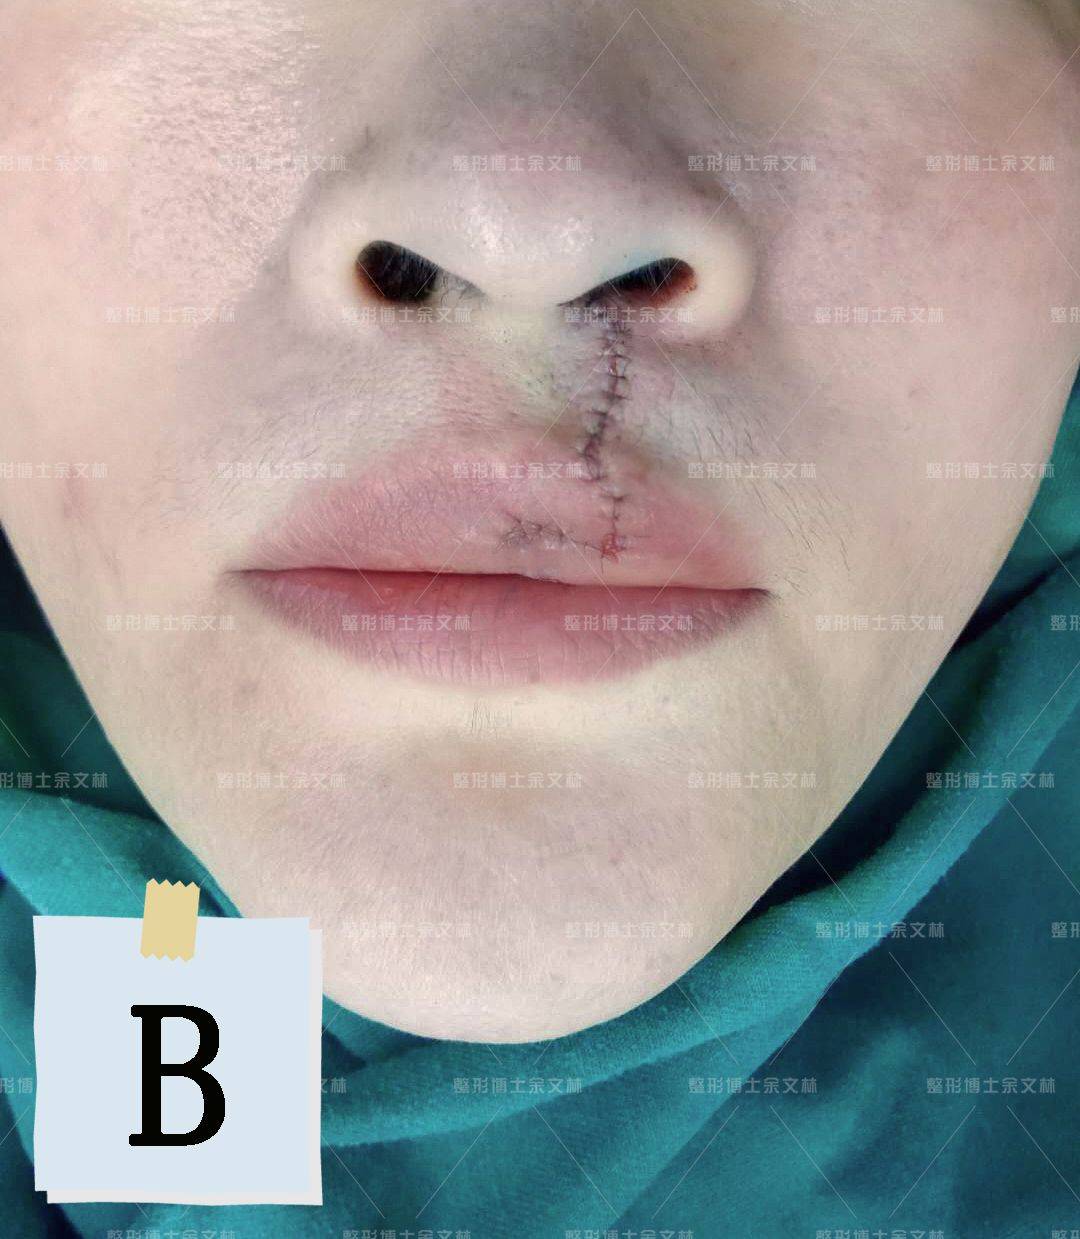 【案例分析】42岁患者不想被唇裂影响一辈子,手术修复红唇畸形